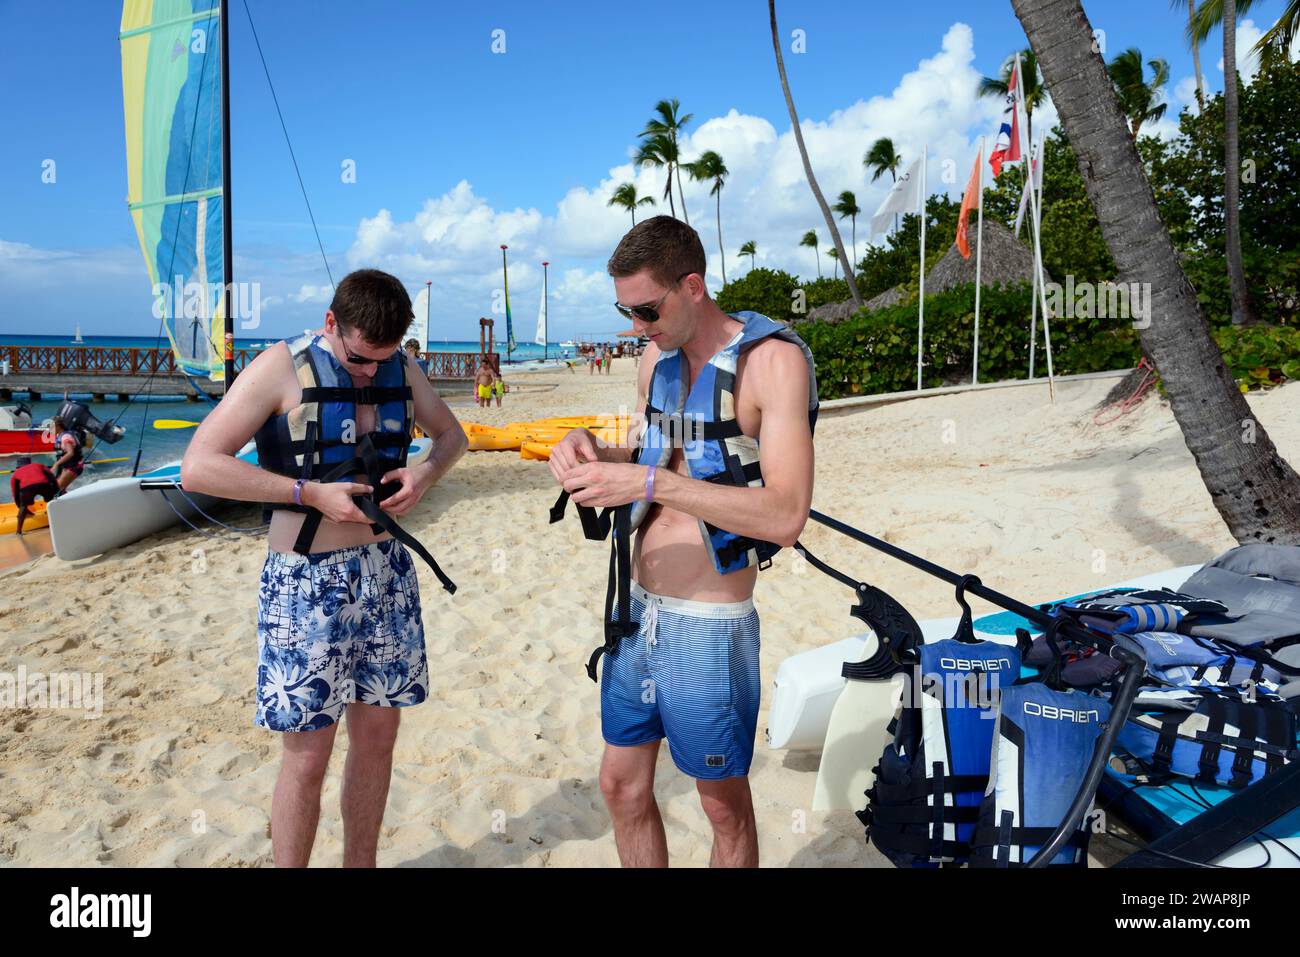 Deux hommes se préparent à naviguer sur la plage tropicale ensoleillée, voyage en catamaran, plage Dominicus, Bayahibe, République Dominicaine, Hispaniola, Caraïbes, Amérique, ce Banque D'Images